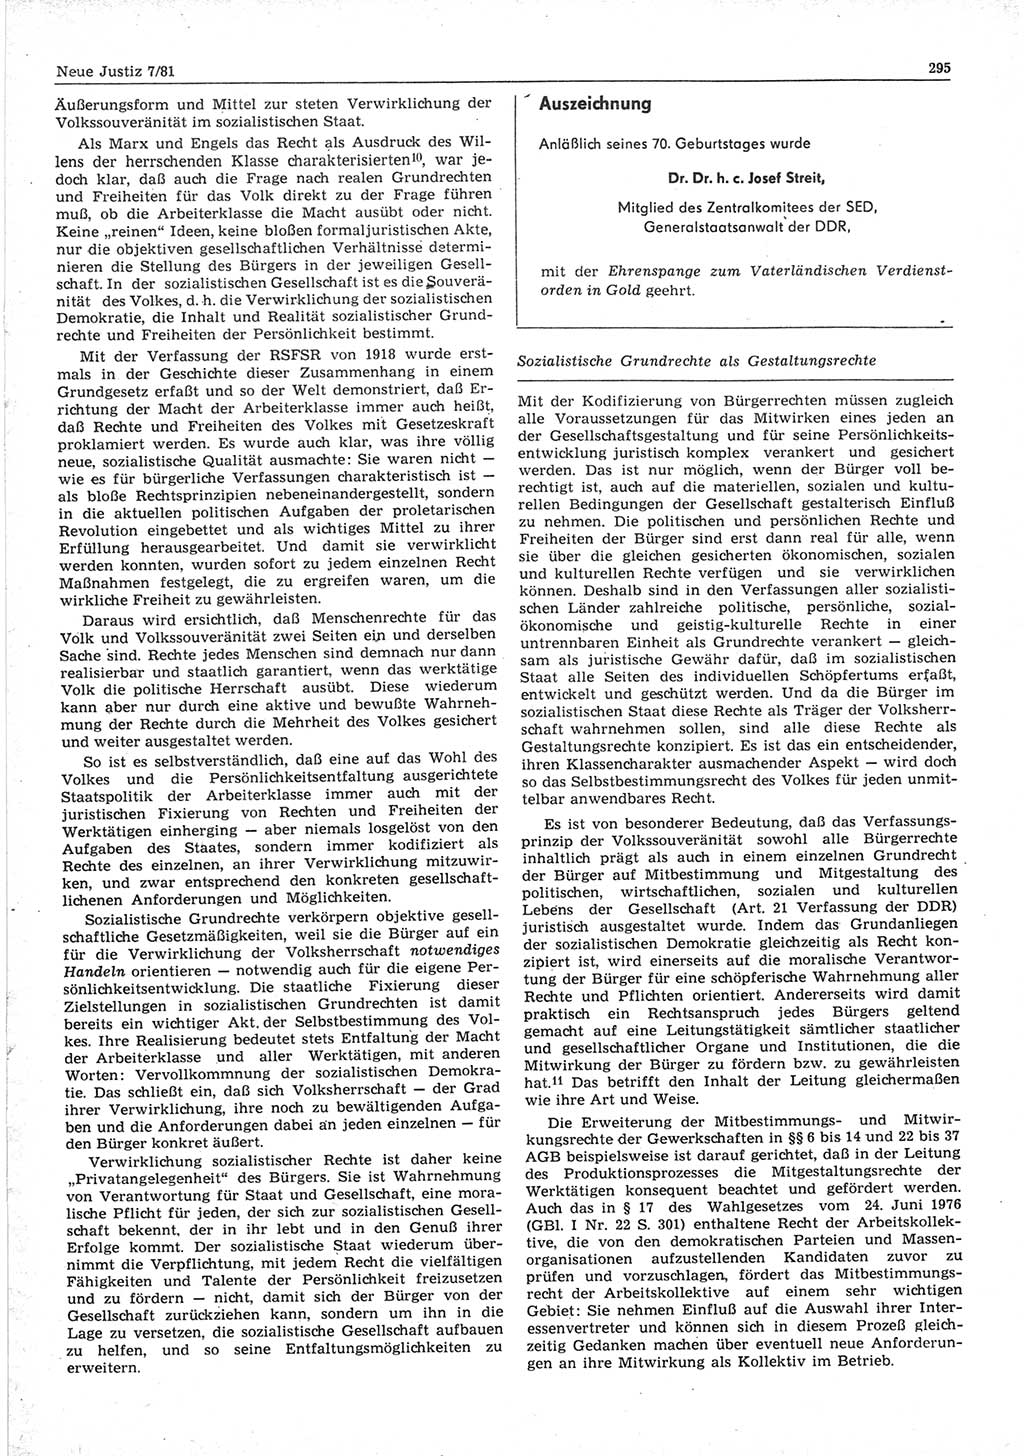 Neue Justiz (NJ), Zeitschrift für sozialistisches Recht und Gesetzlichkeit [Deutsche Demokratische Republik (DDR)], 35. Jahrgang 1981, Seite 295 (NJ DDR 1981, S. 295)